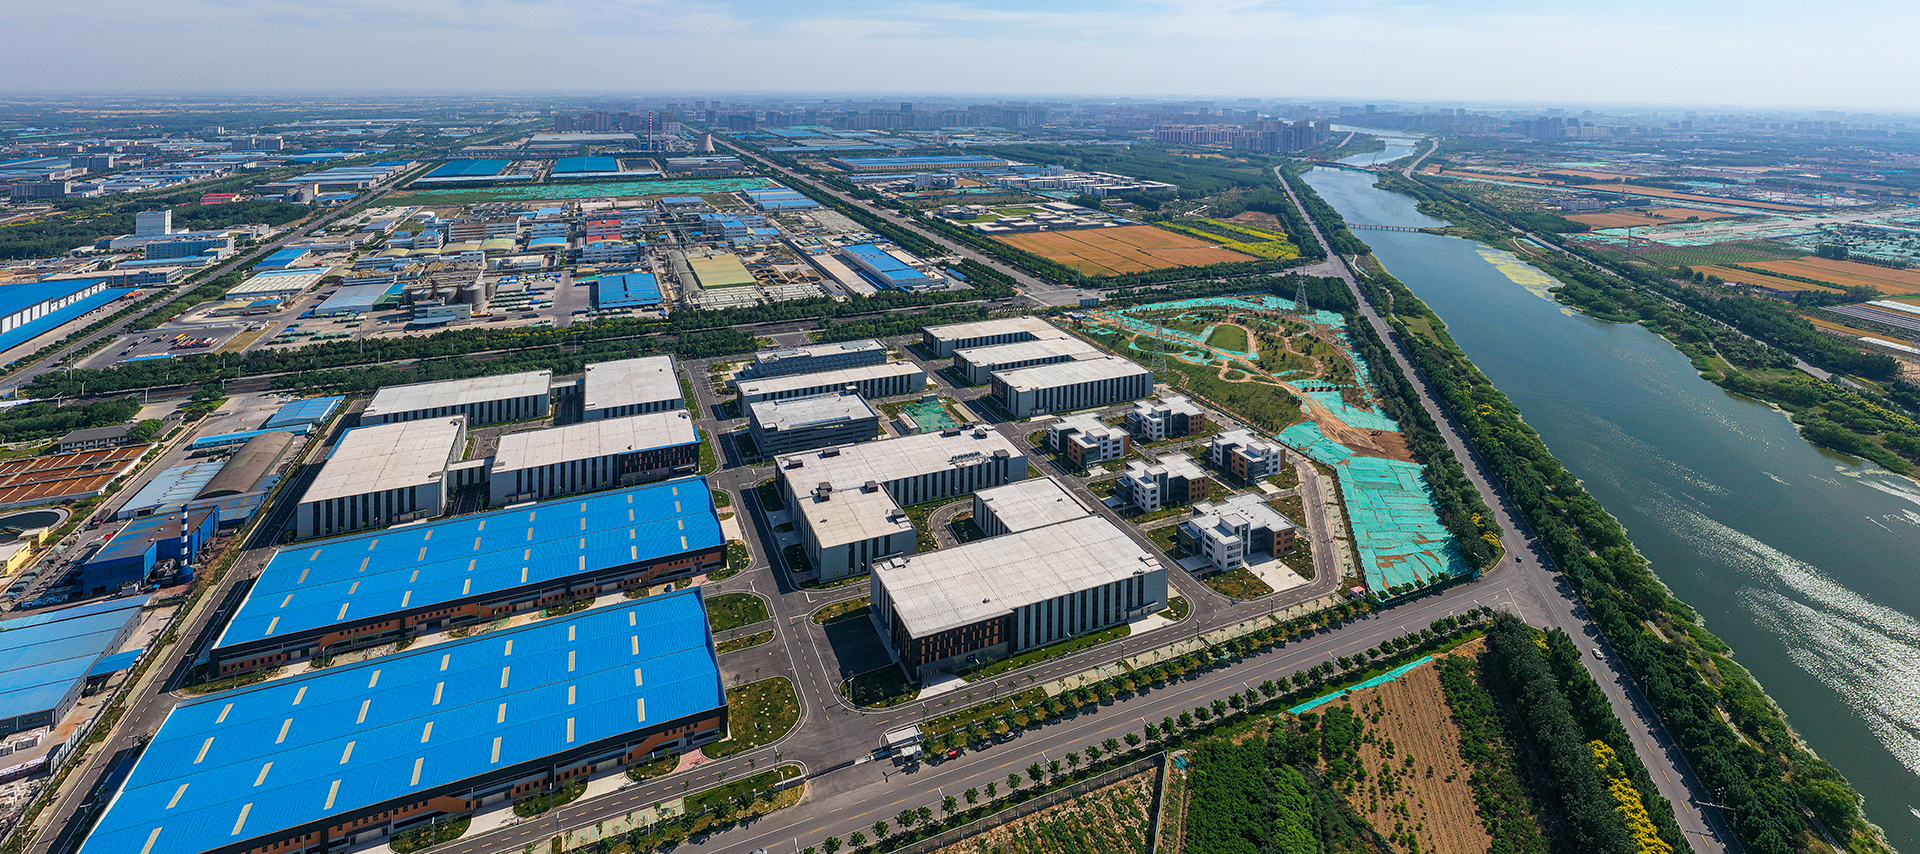 Индустриальный парк новой кинетической энергии зоны развития городского округа Ляочэн

